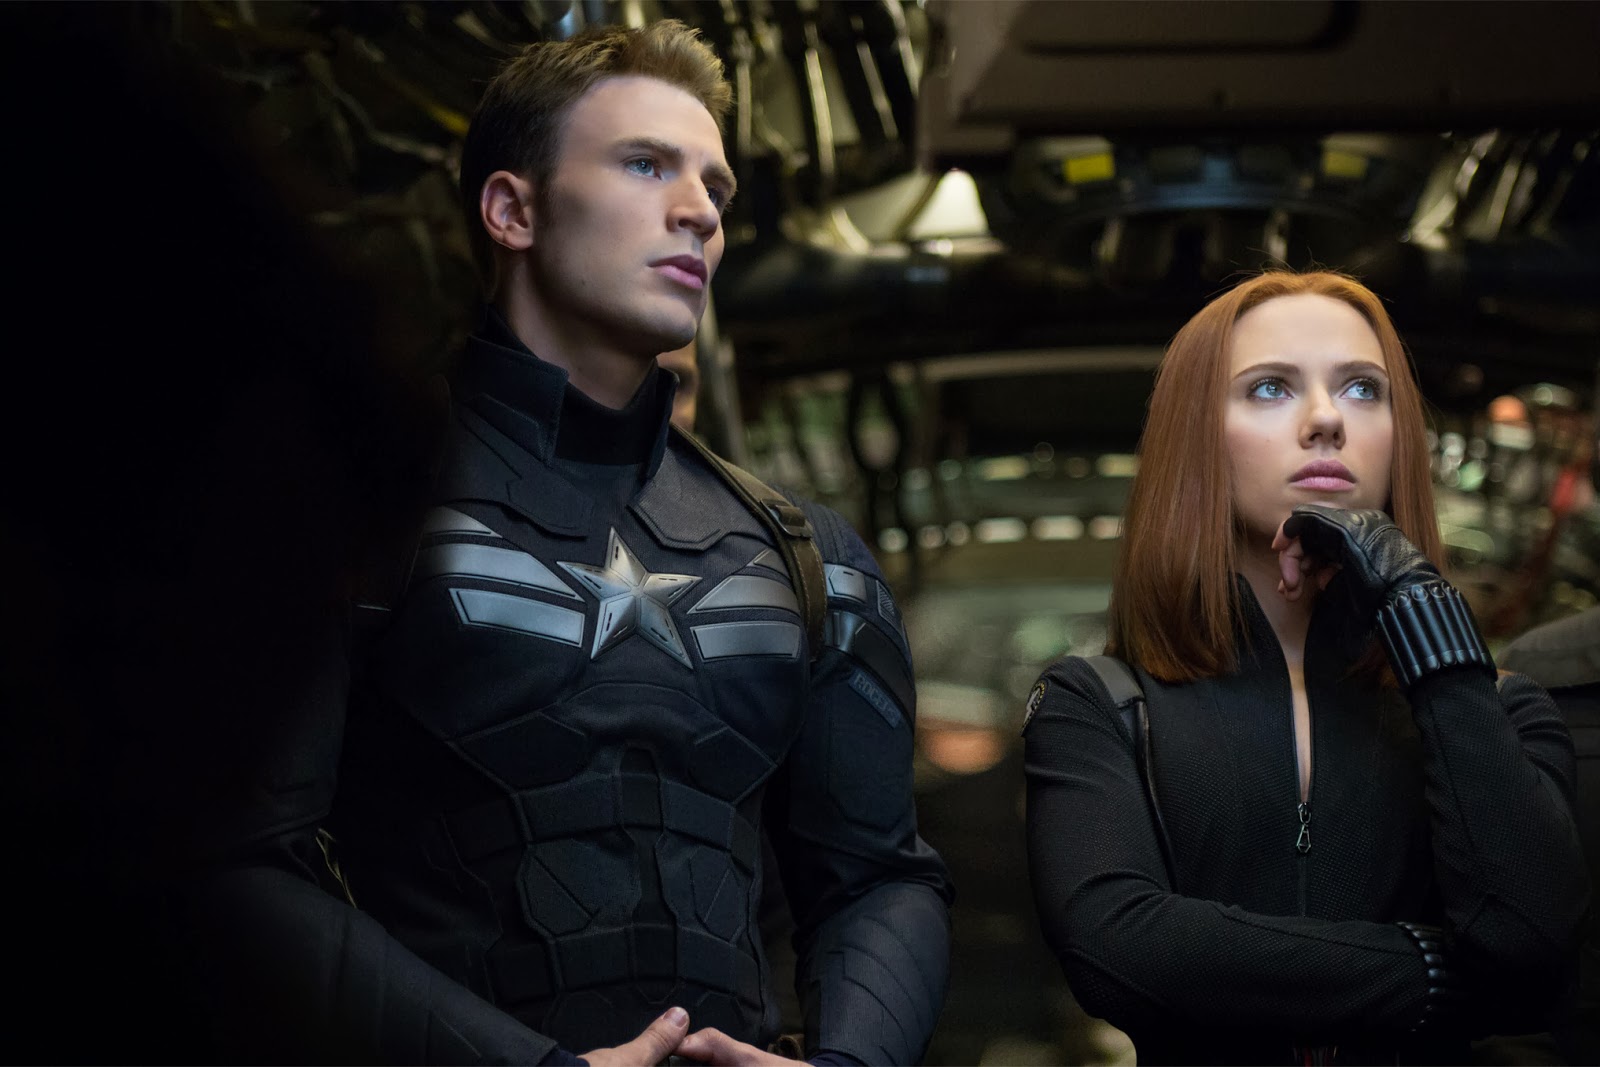 ｃｉａ こちら映画中央情報局です Captain America ネタバレ注意 キャプテン アメリカ シビル ウォー は やっぱり コミックヒーロー大集合 アベンジャーズ の最新作だった マーベルが アベンジャーズのヒーロー全員どころか さらに あのヒーロー